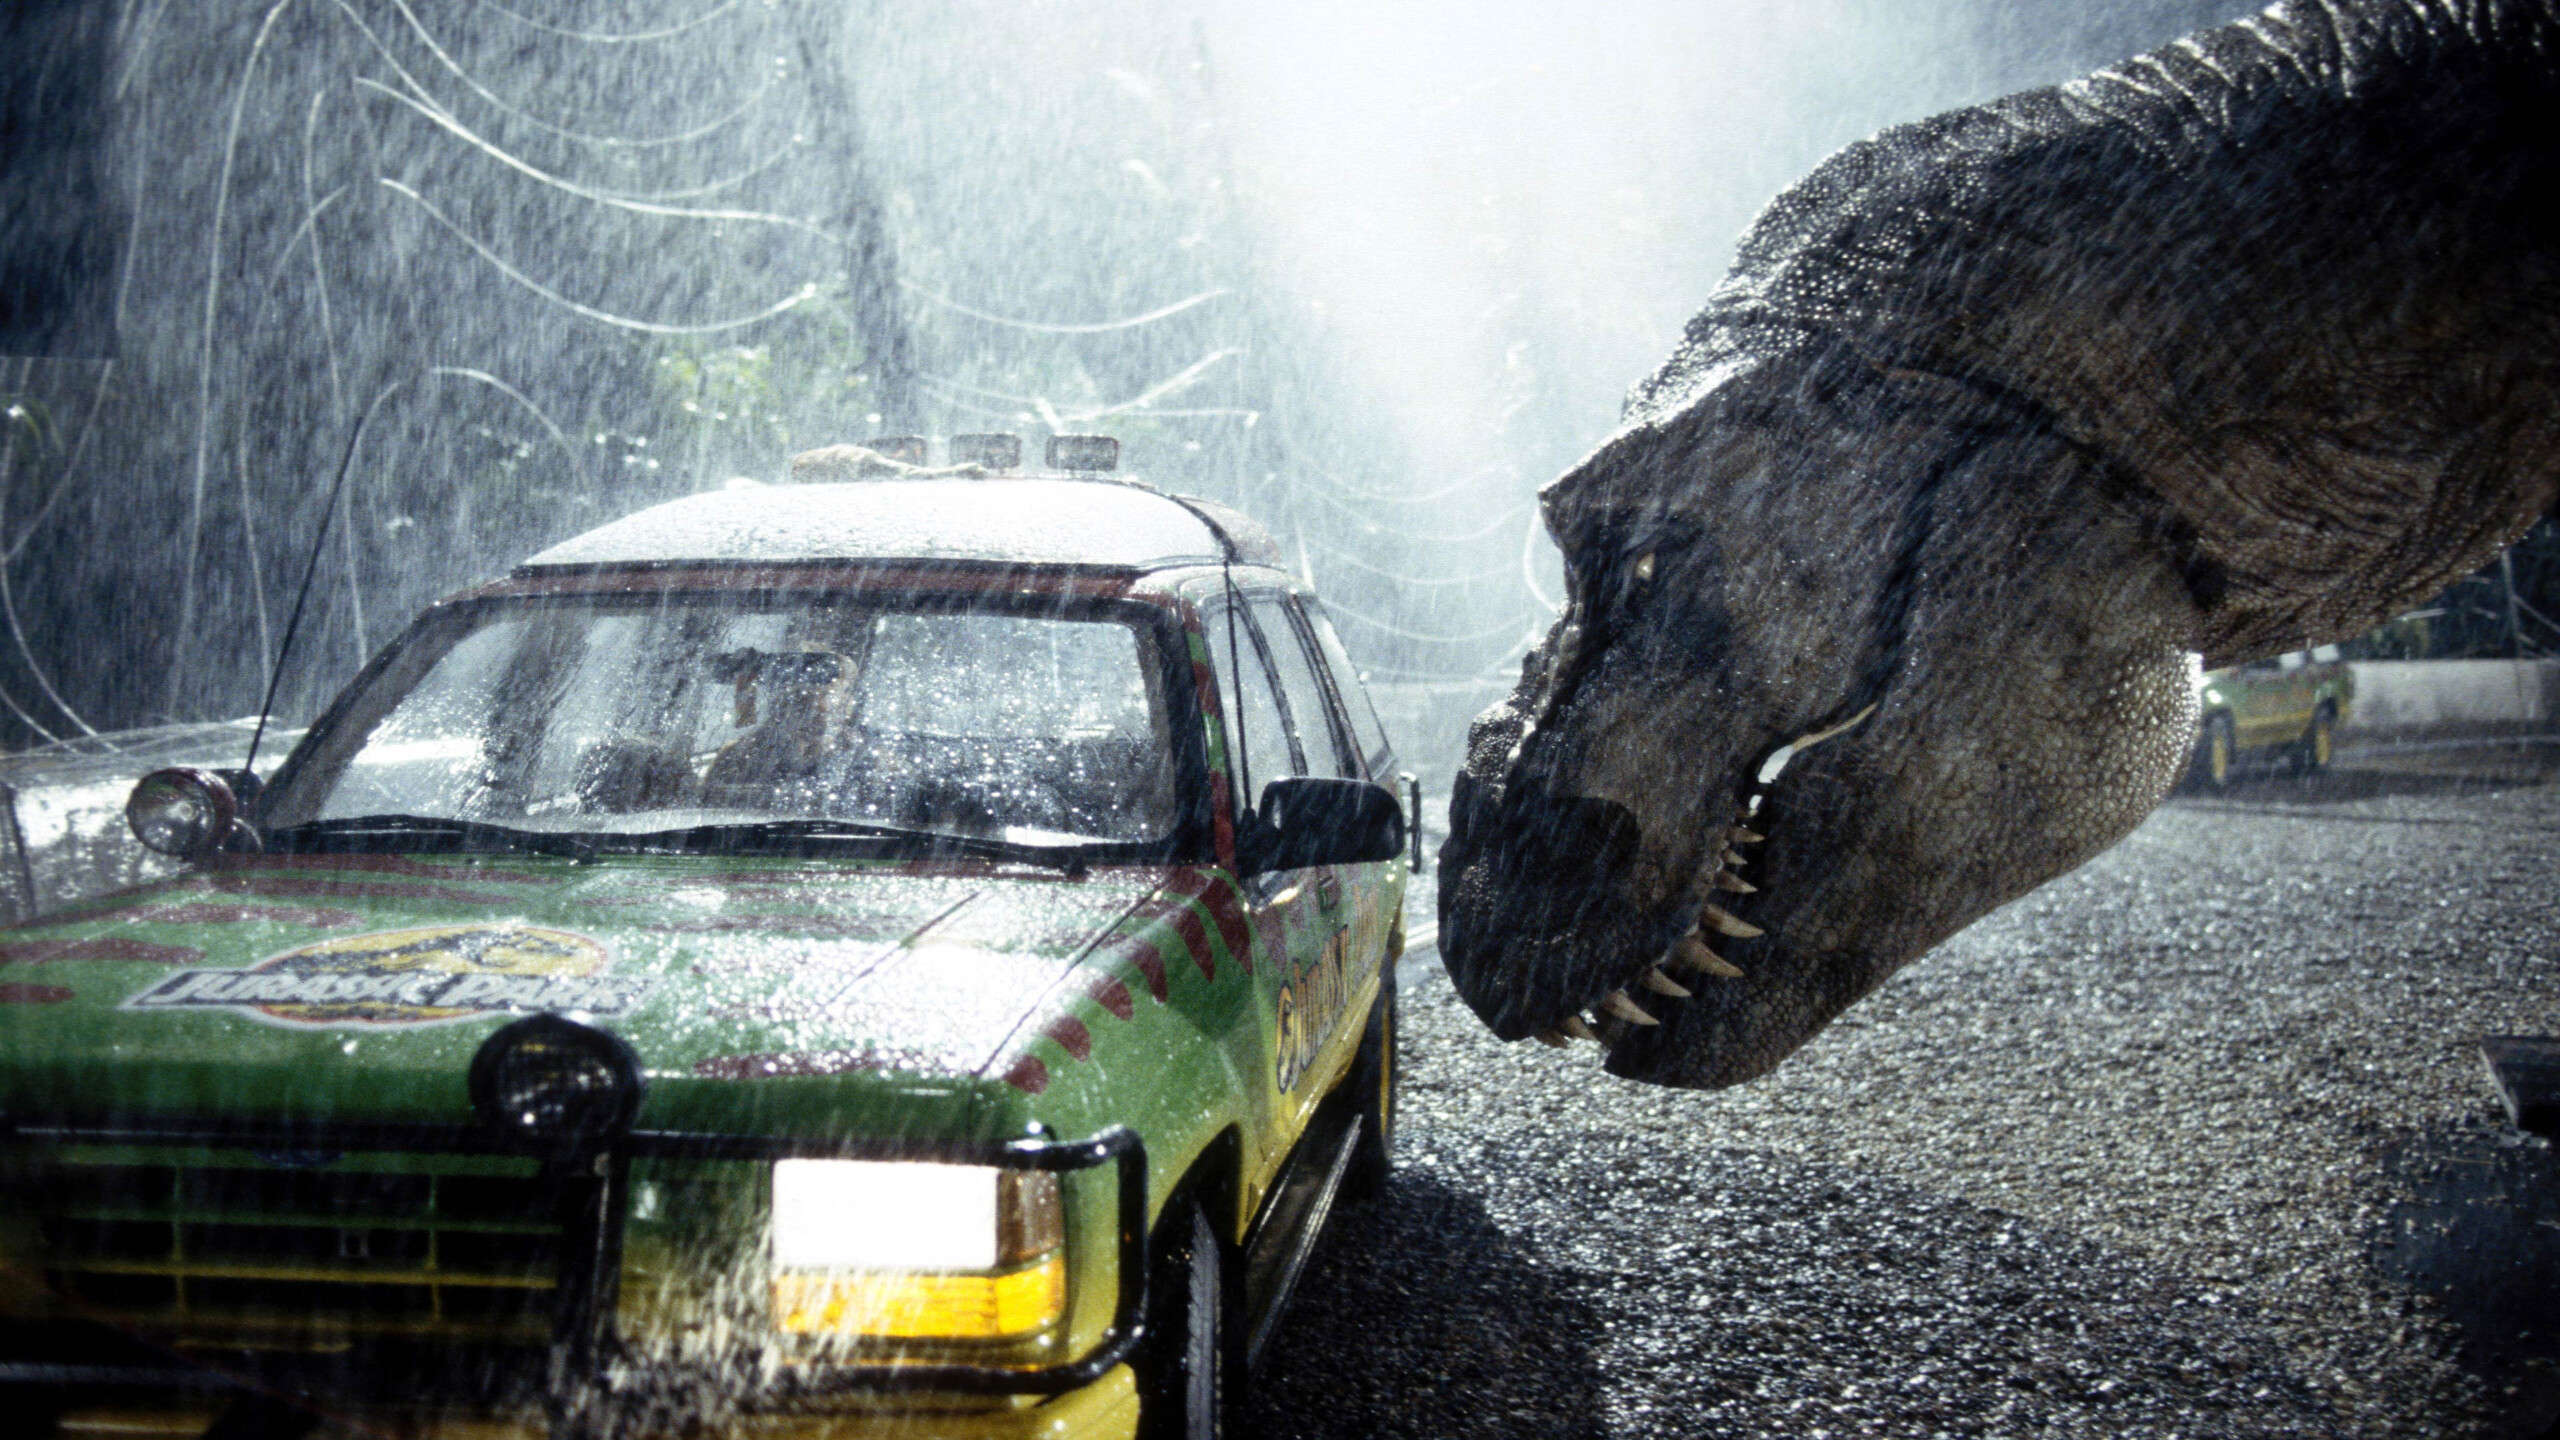 Jurassic Park: A screenplay written by Michael Crichton and David Koepp. 2560x1440 HD Wallpaper.